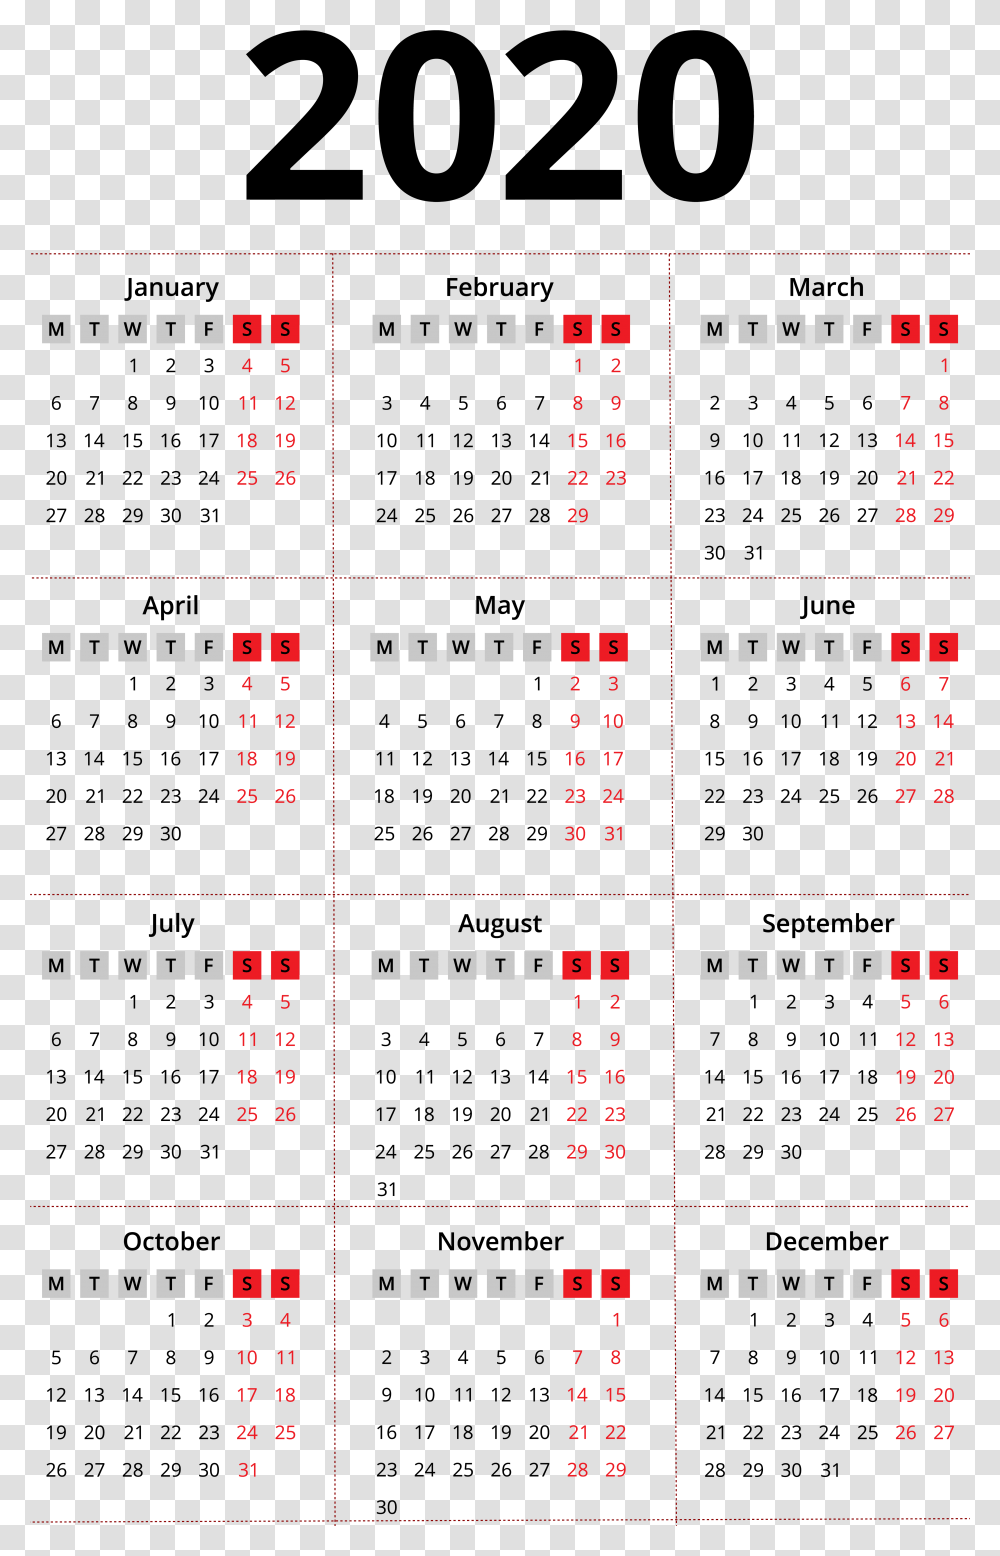 2020 Calendar Background 2020 Calendar With Arabic, Scoreboard, Menu Transparent Png